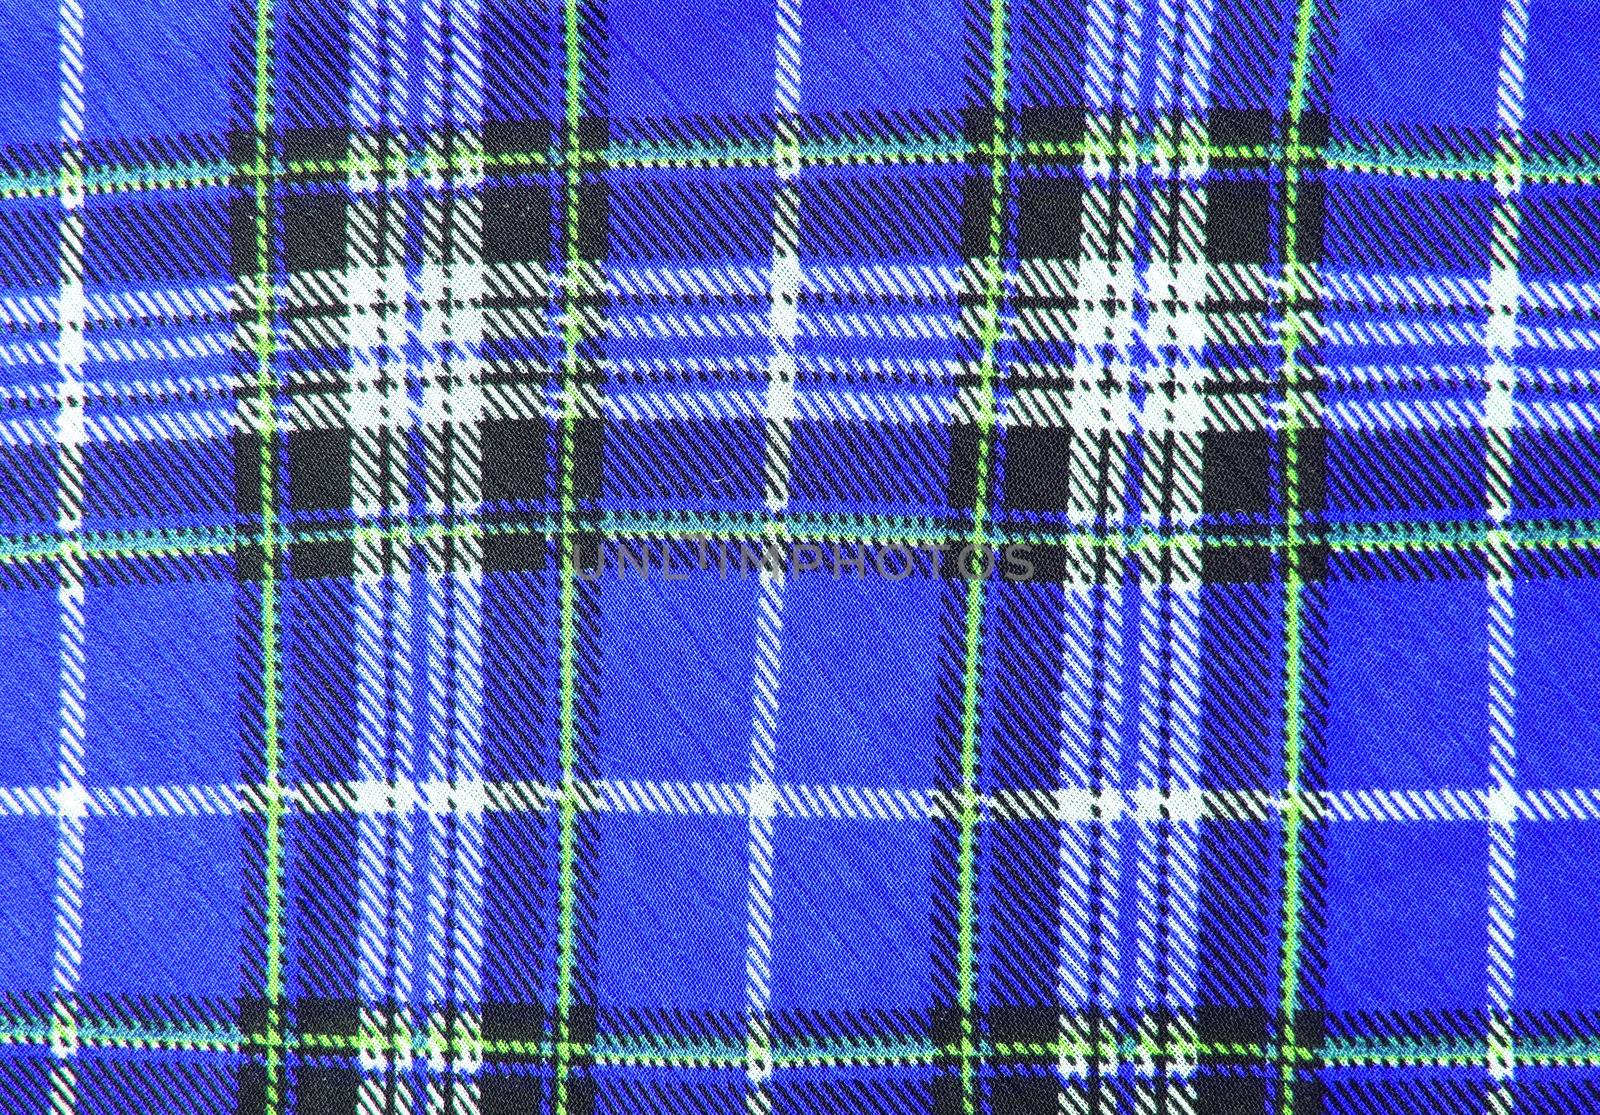 Blue tartan fabric texture  by nuchylee